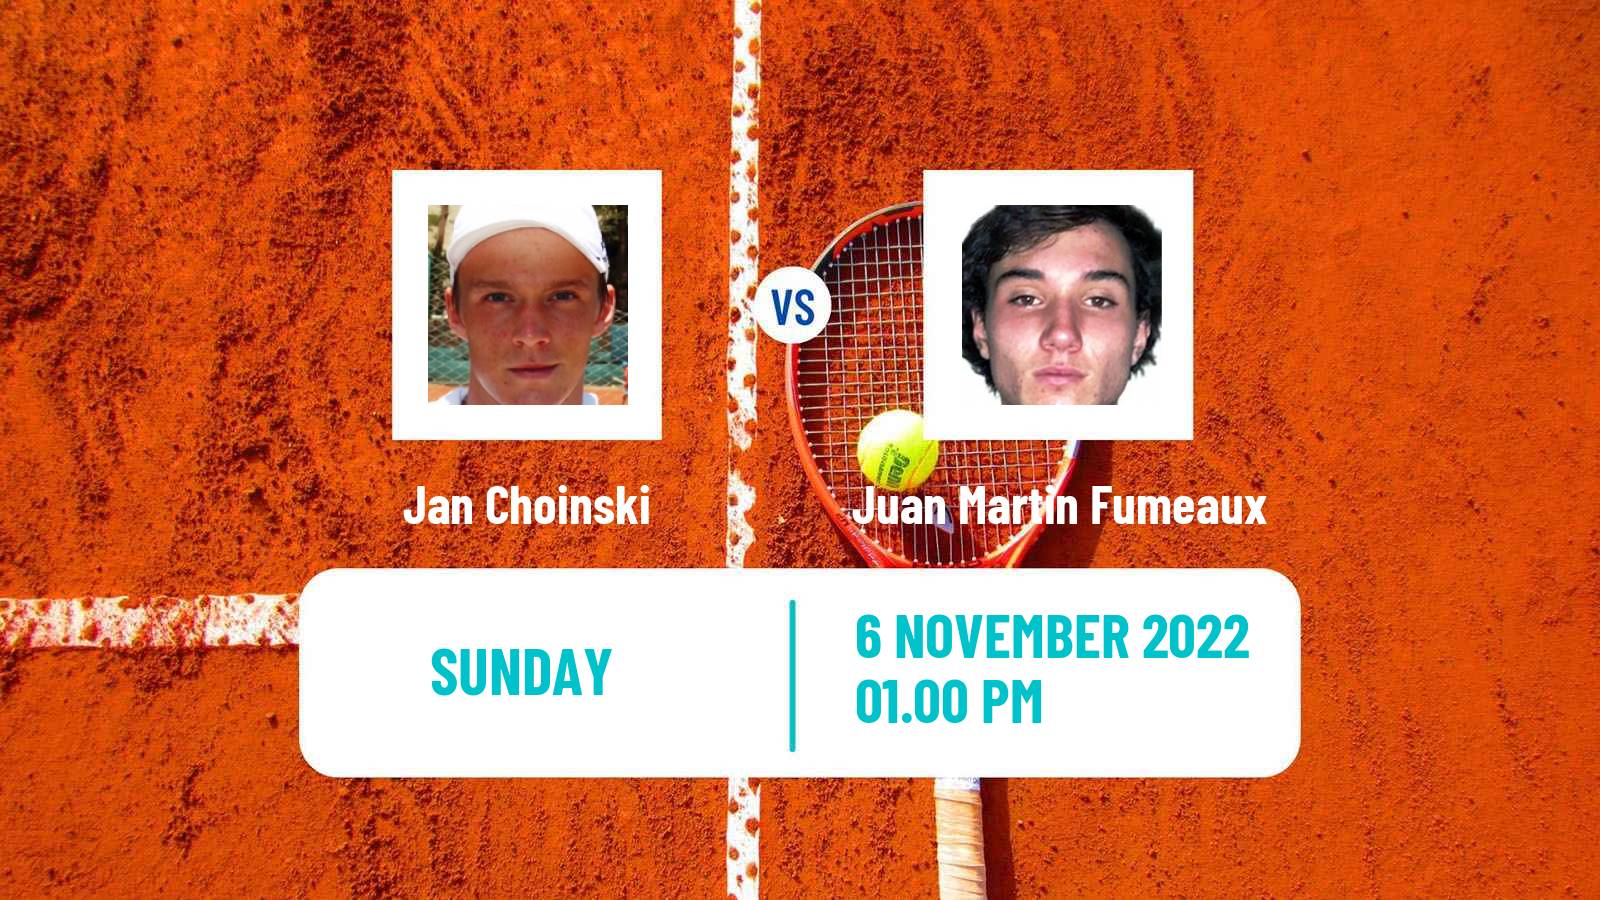 Tennis ATP Challenger Jan Choinski - Juan Martin Fumeaux